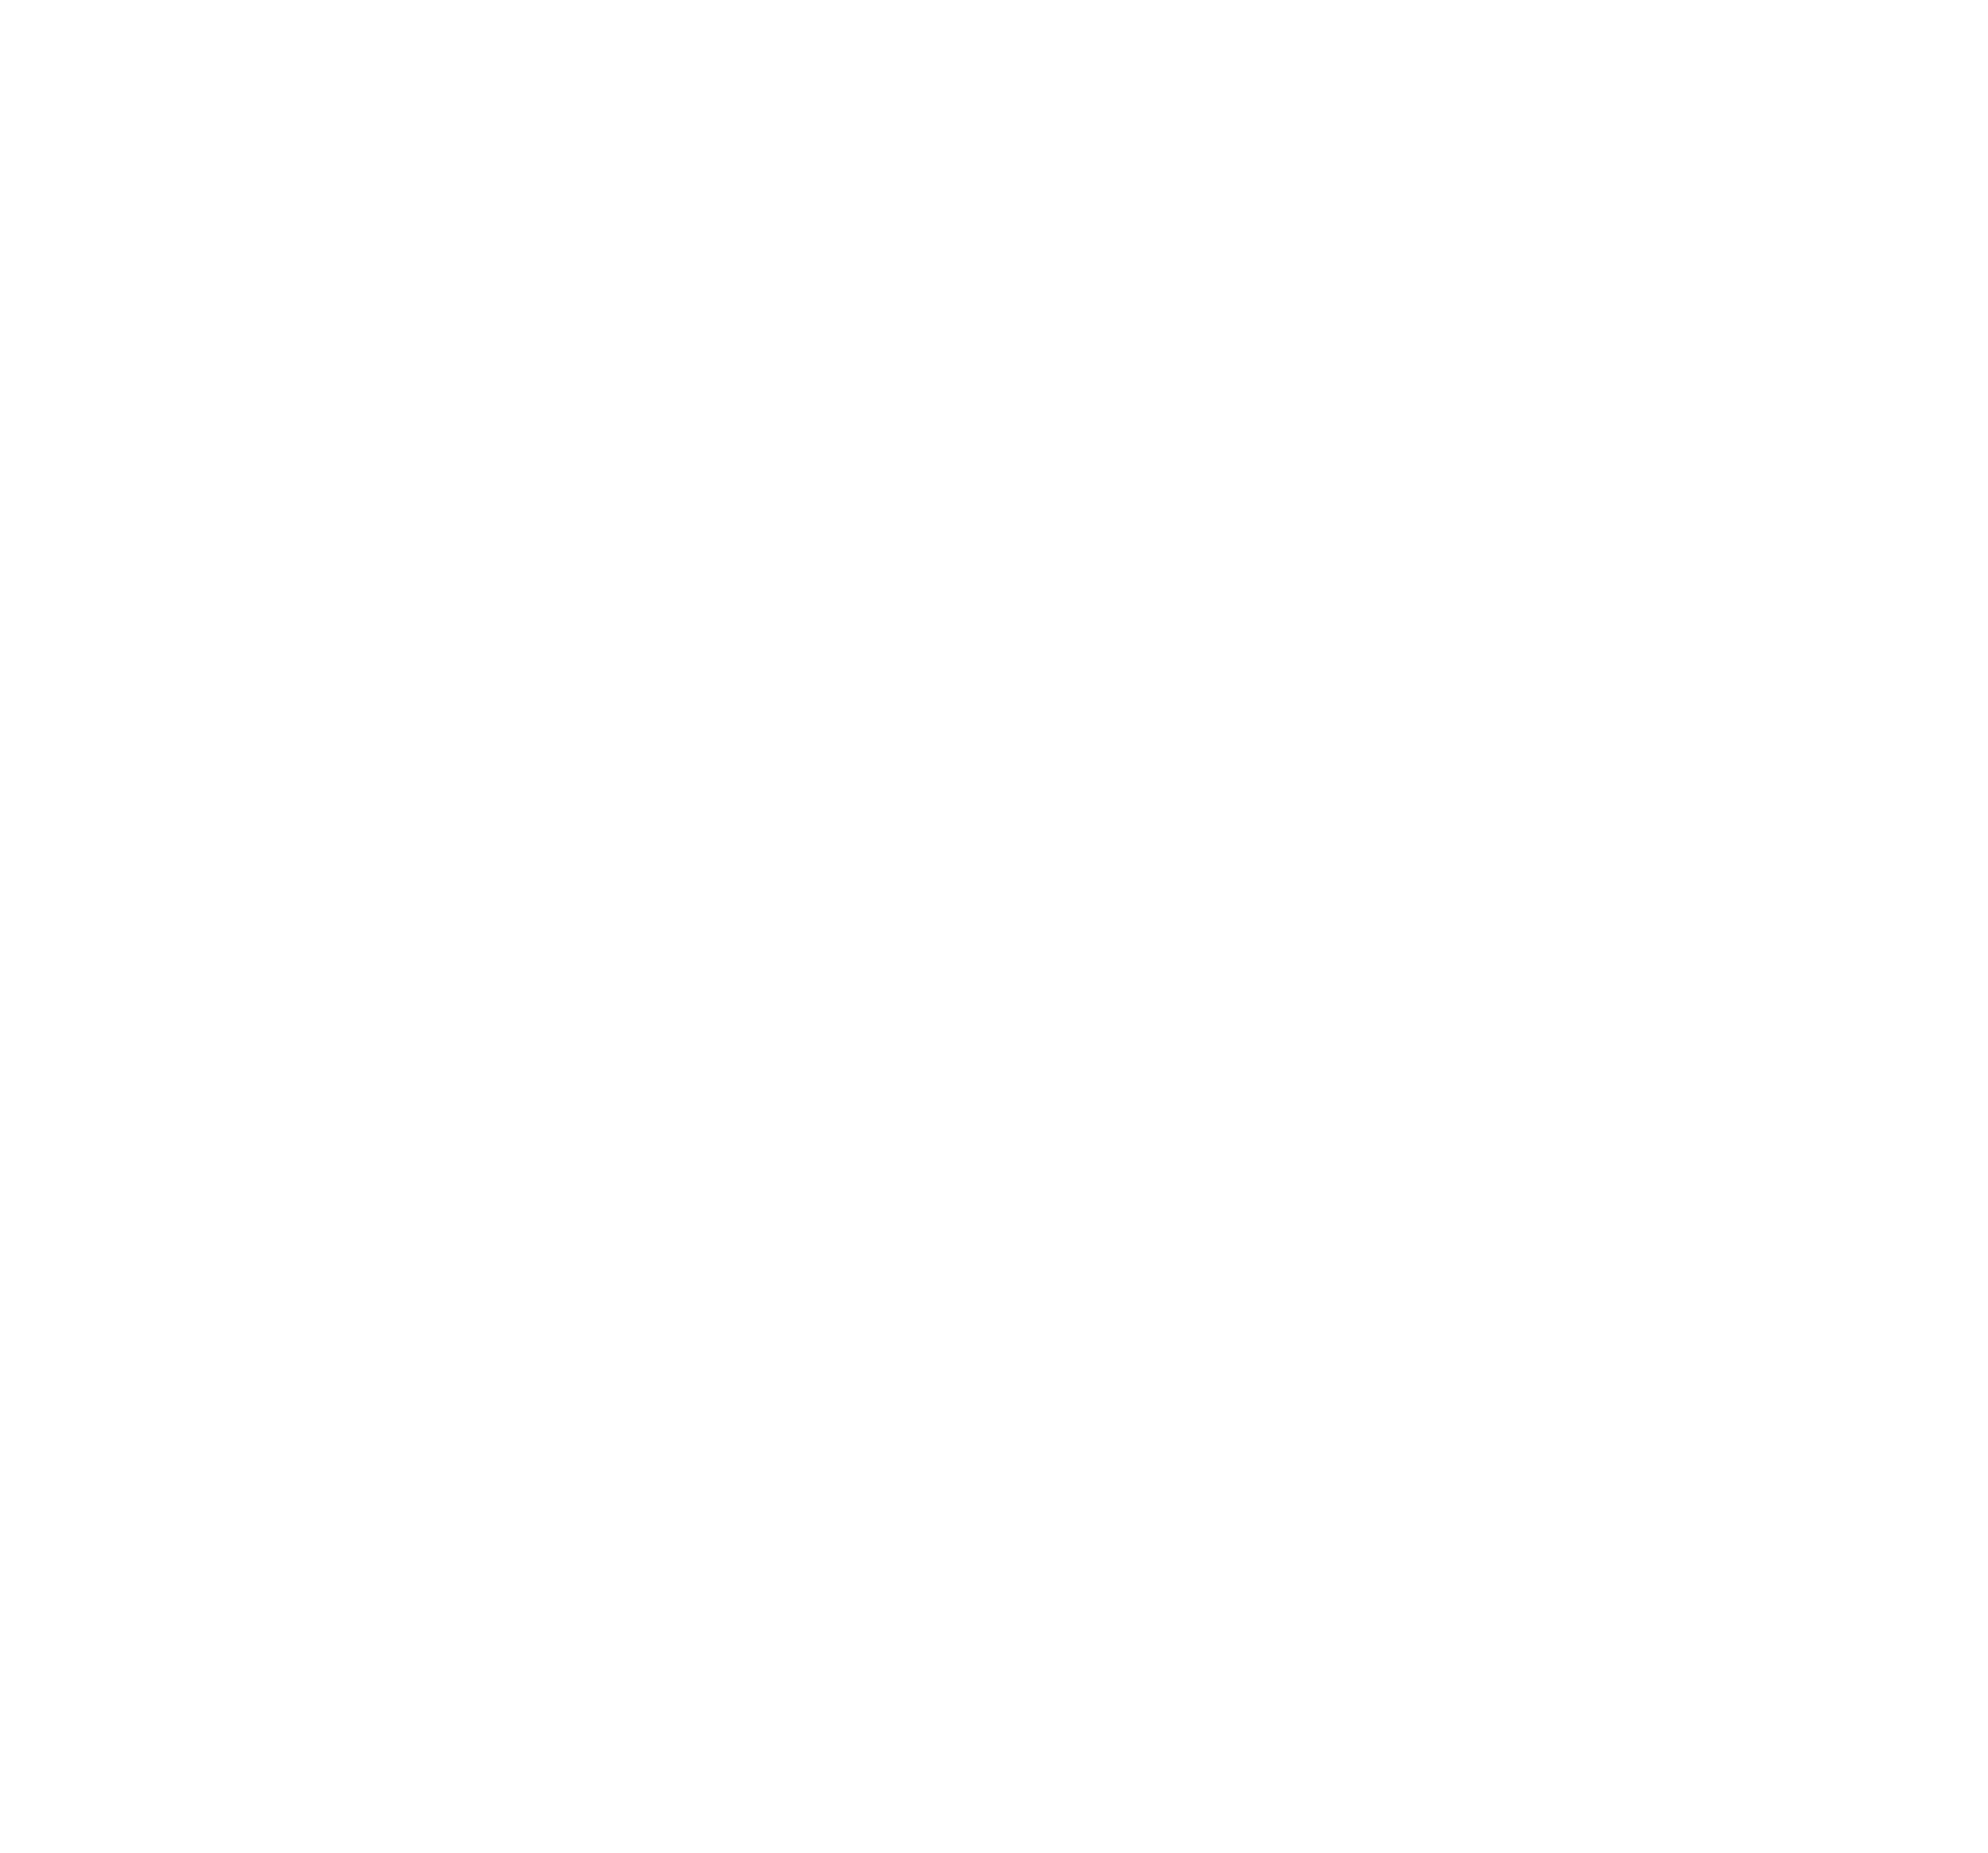 Gridmetrics Inc.